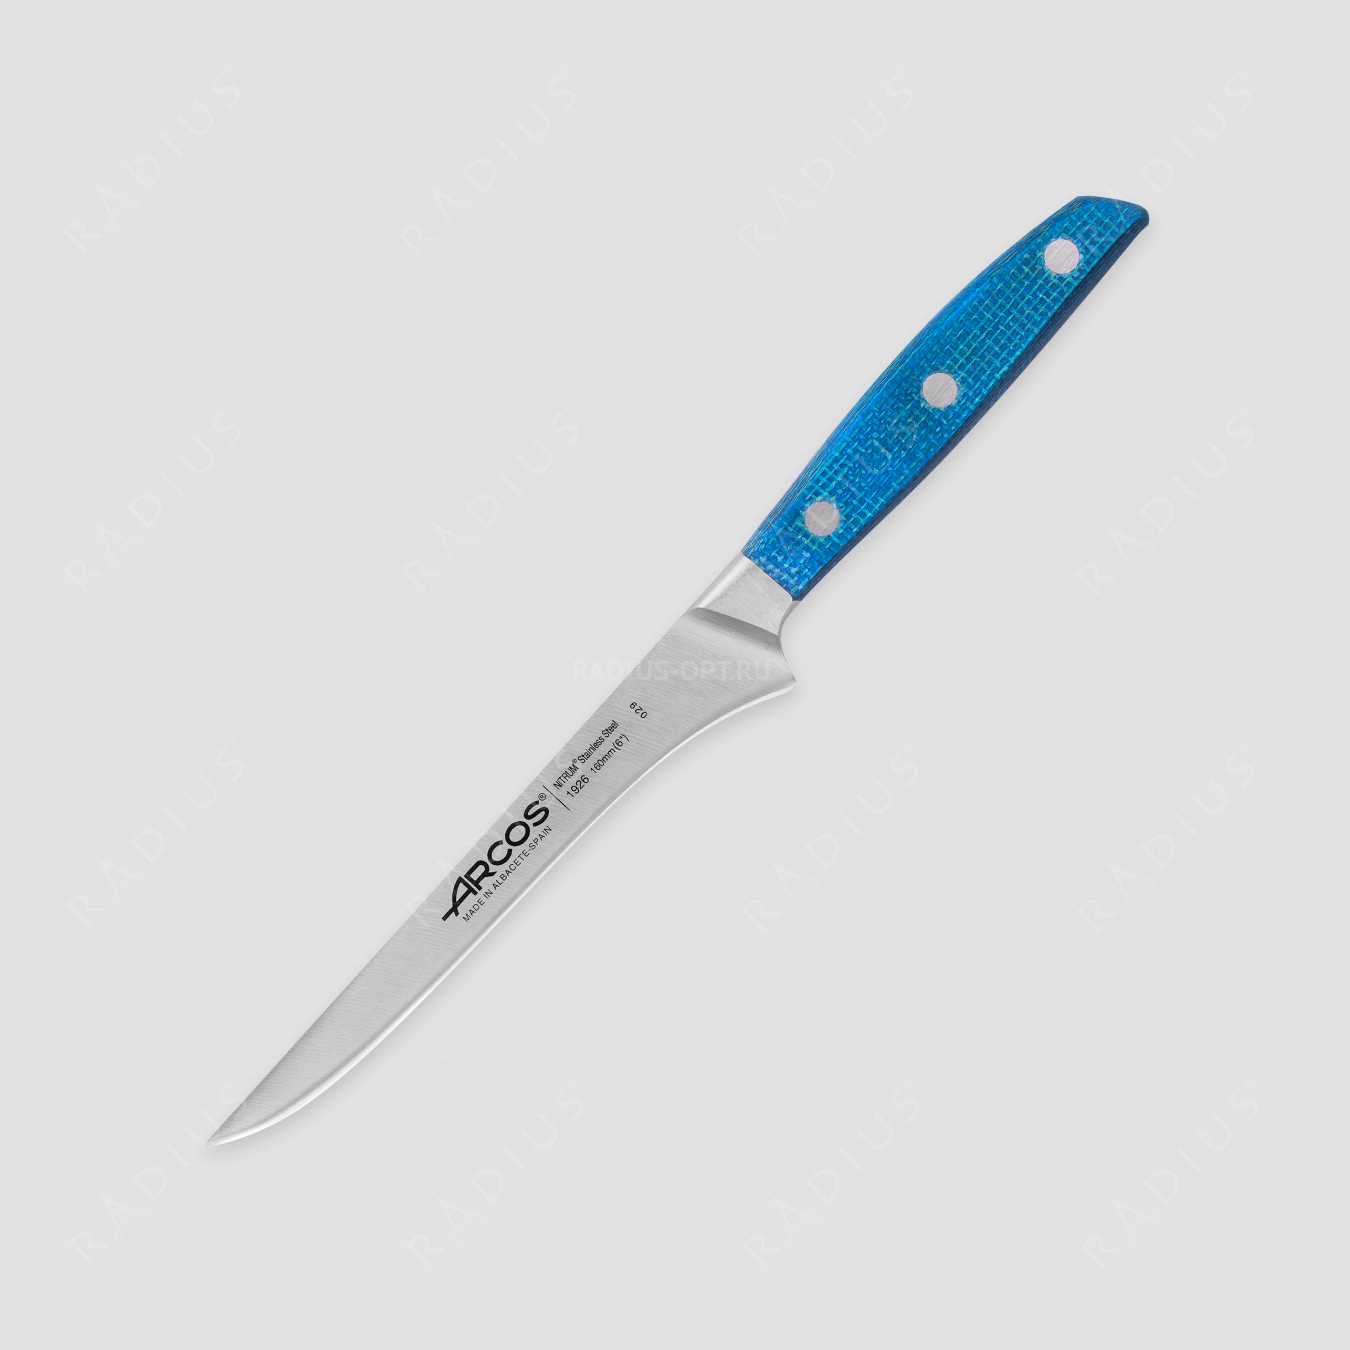 Нож кухонный обвалочный 16 см, серия Brooklyn, ARCOS, Испания